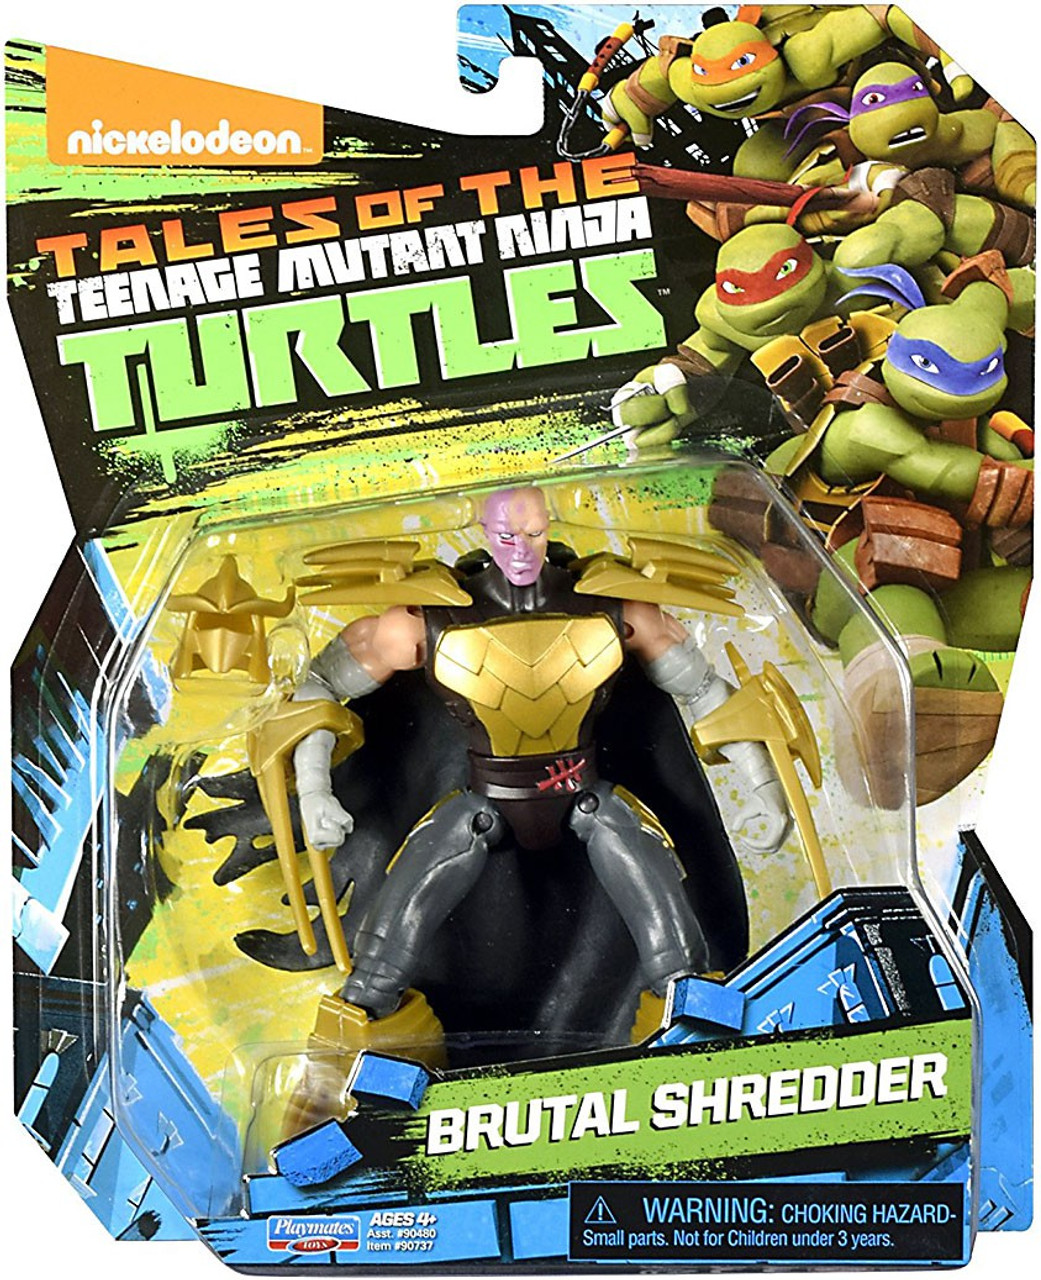 Teenage Mutant Ninja Turtles Tales of the TMNT Brutal Shredder Action